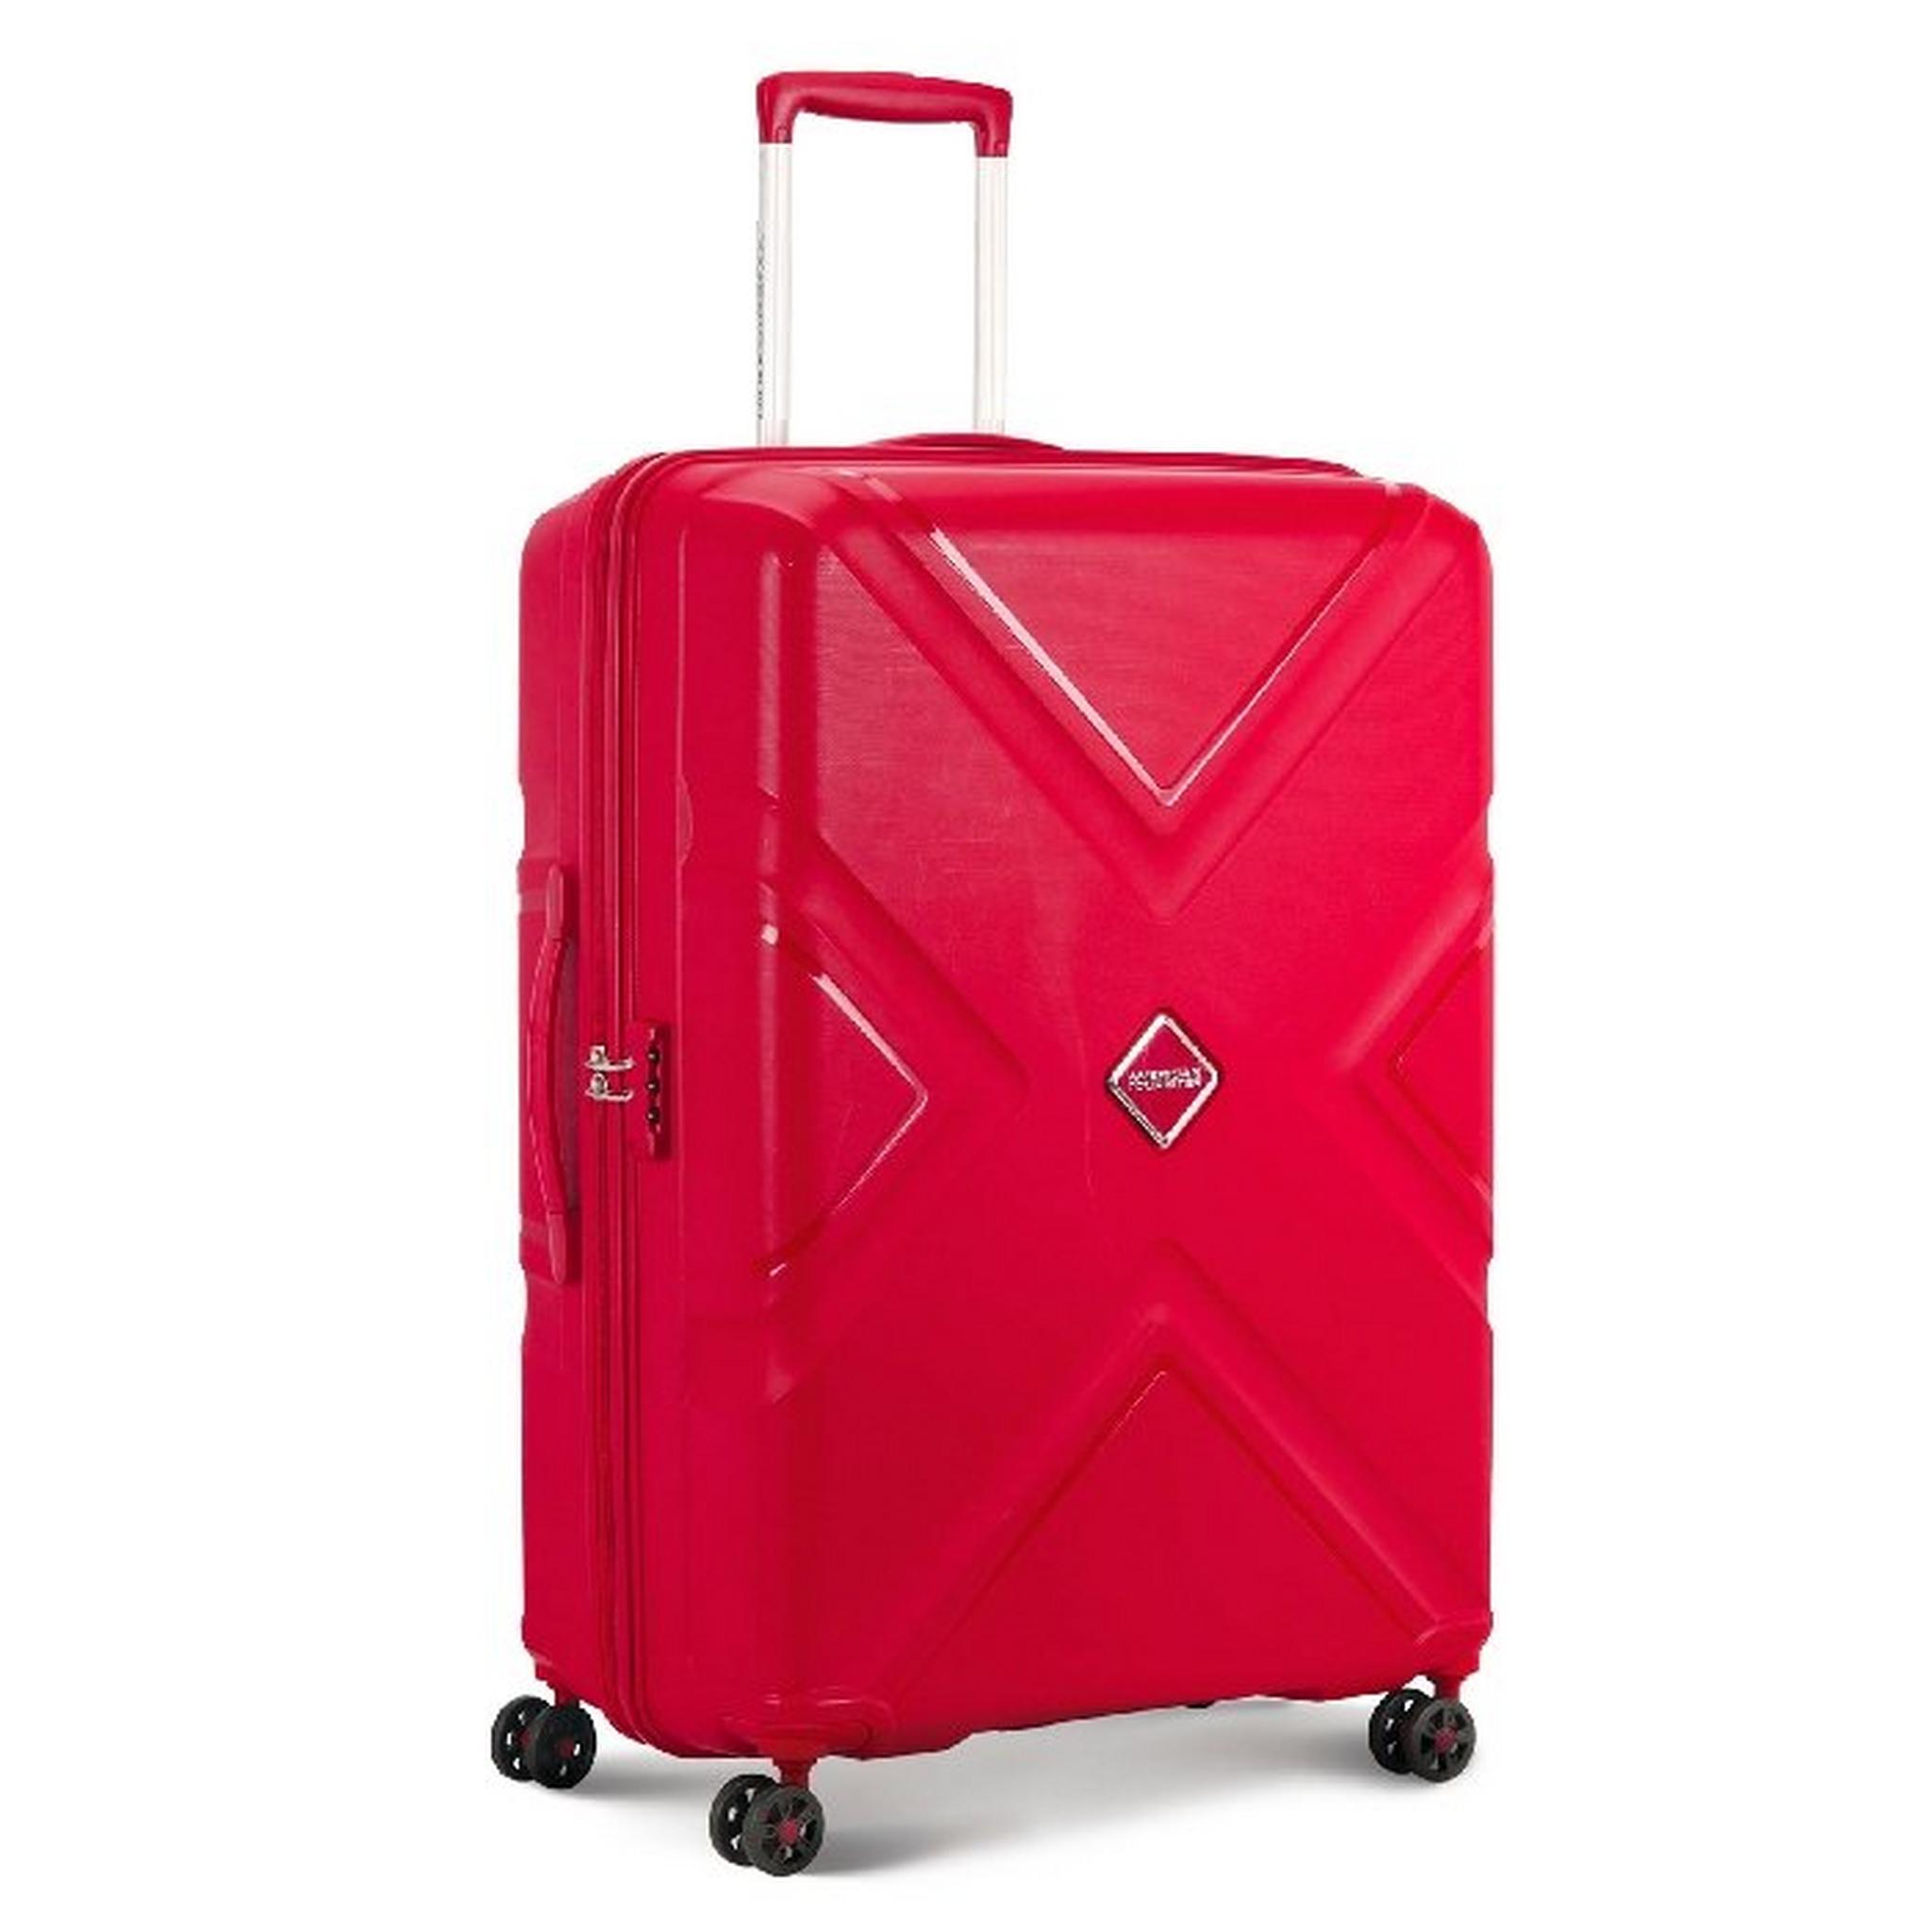 حقيبة السفر كروس الصلبة حجم 68 سم من امريكان توريستر - احمر